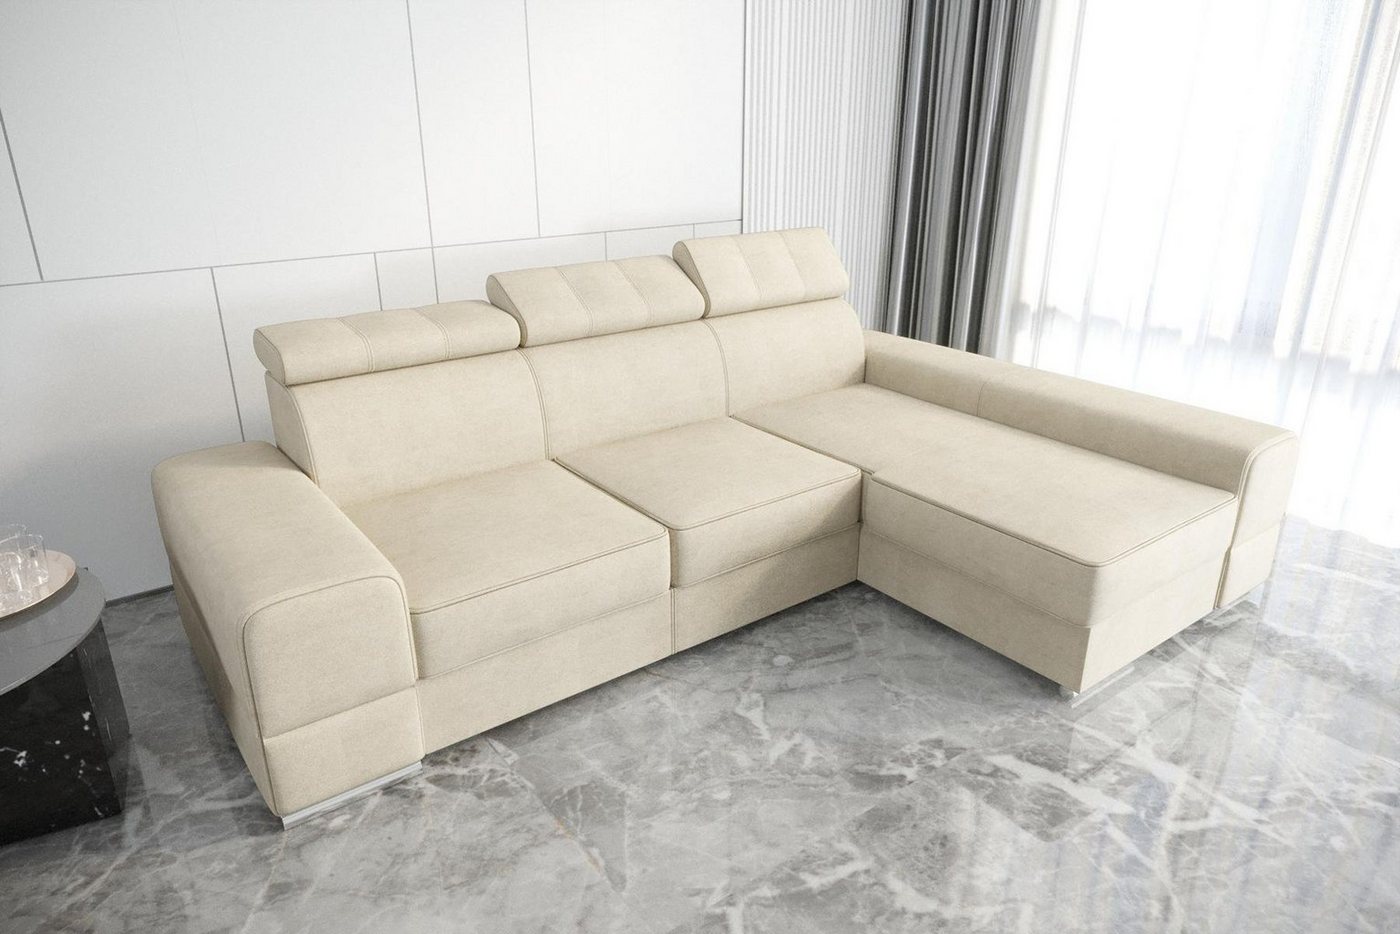 JVmoebel Ecksofa Designer Beiges Ecksofa L-Form Luxus Couch Wohnzimmer Möbel Neu, Made in Europe von JVmoebel